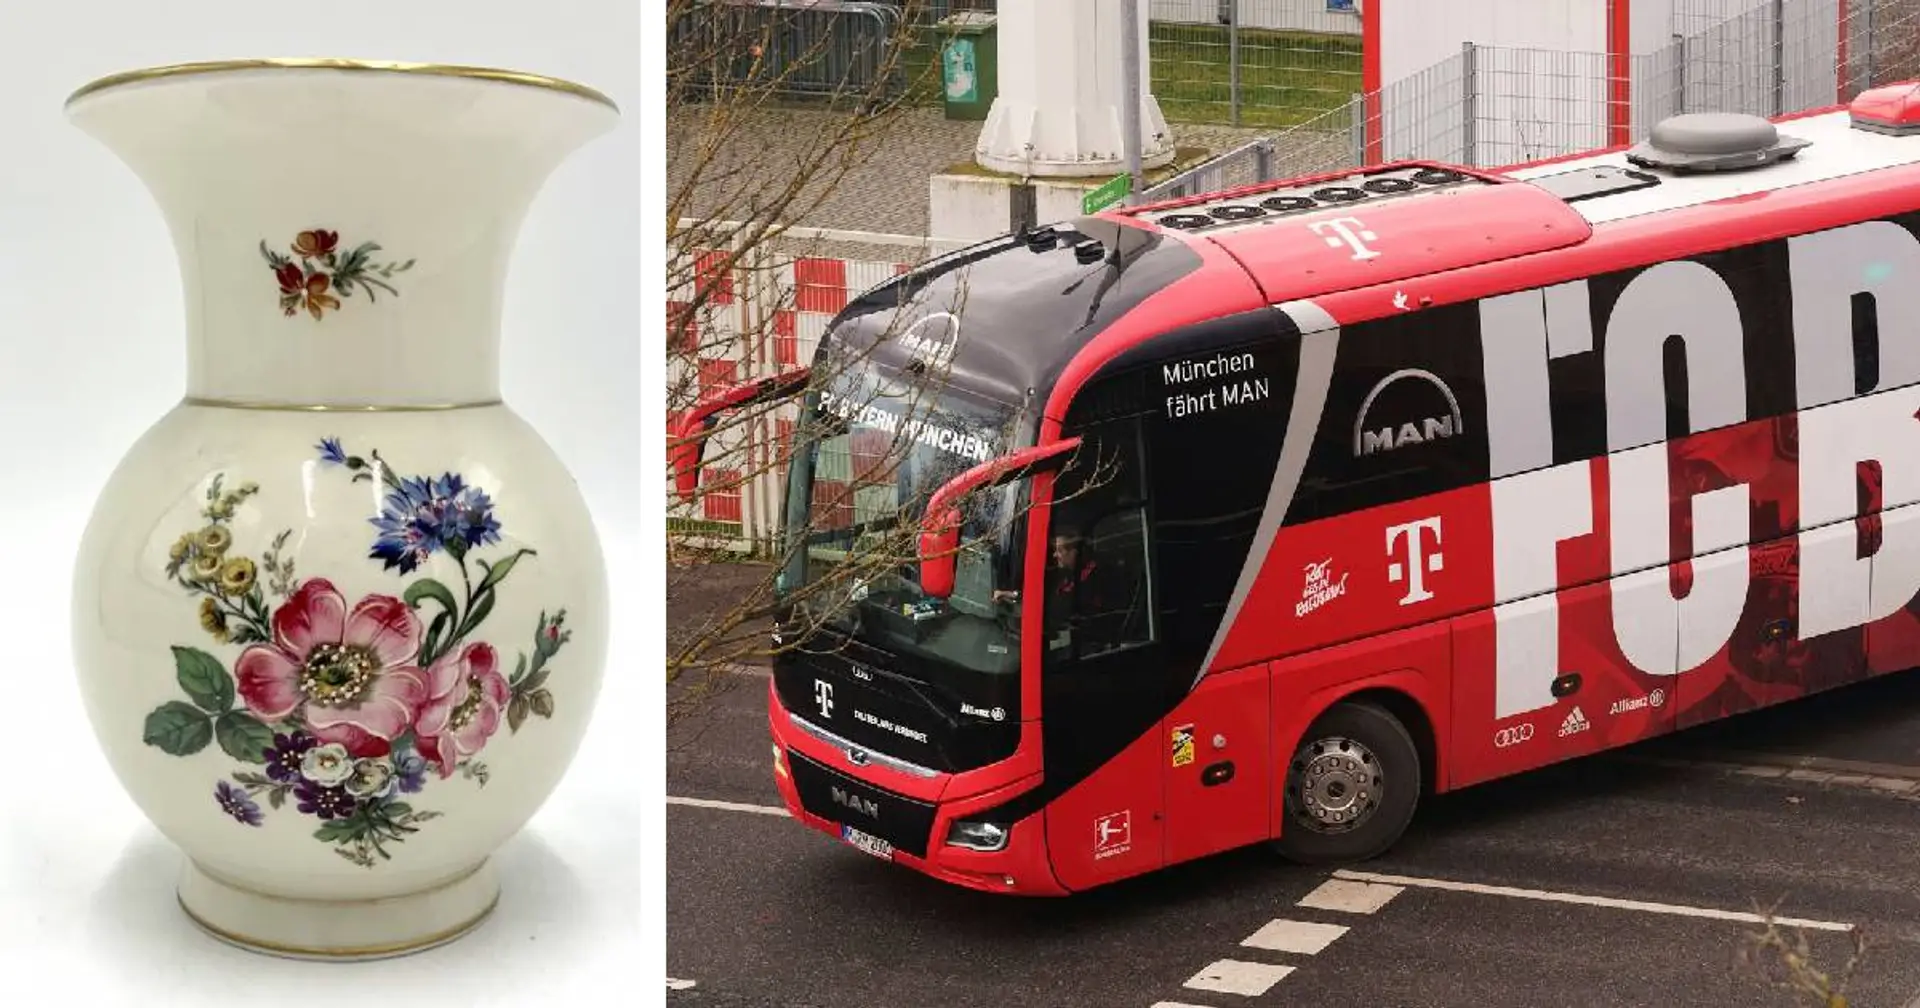 Vorfall bei Abreise aus Bremen: Verwirrter Mann beschädigte Bayern-Bus durch Wurf einer Vase